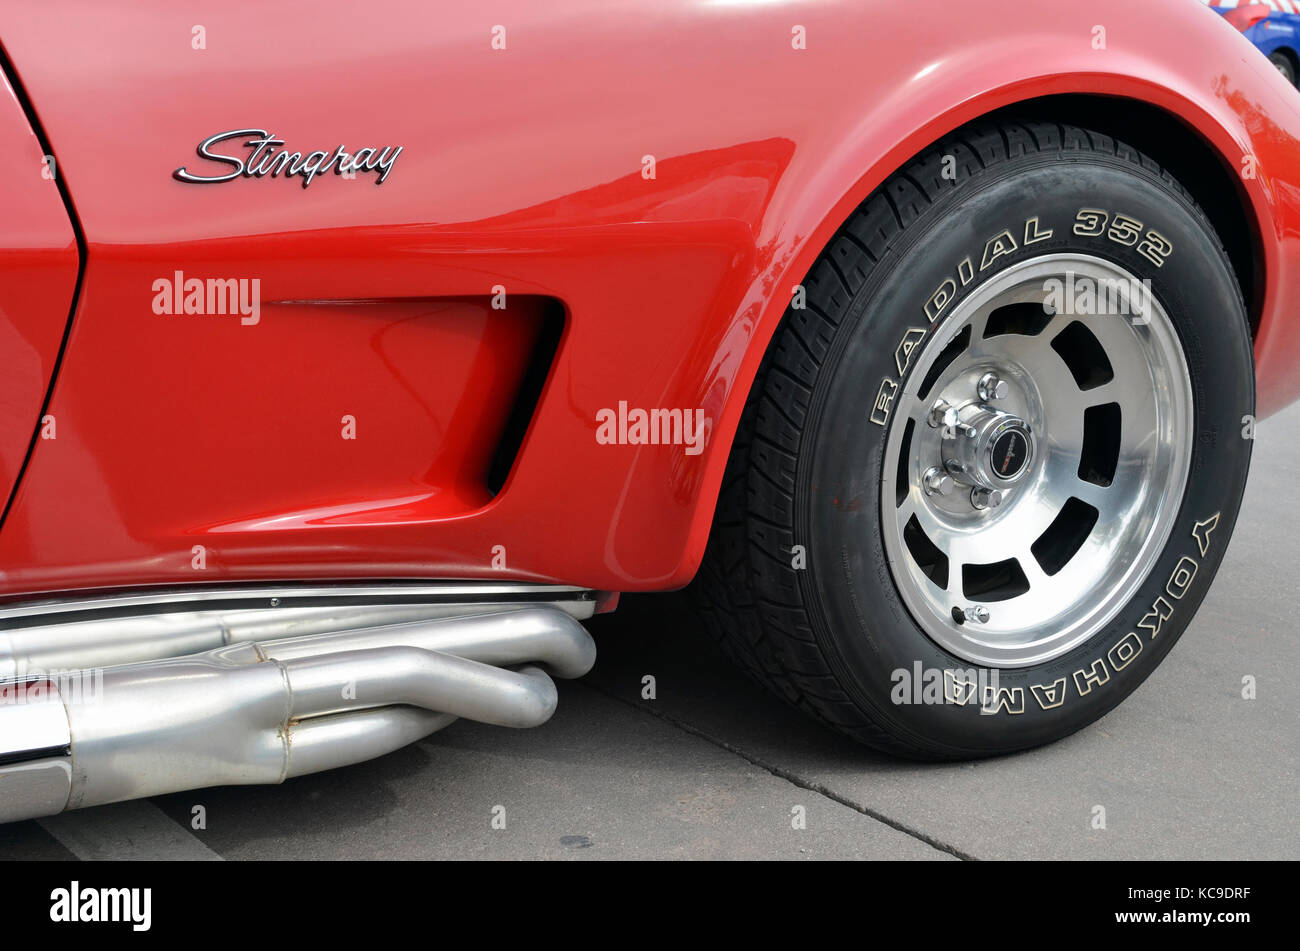 Riunione di classic american cars, nelle strade di torrejon de ardoz (Madrid - Spagna). ruota anteriore della red Chevrolet Corvette C3 stingray Foto Stock